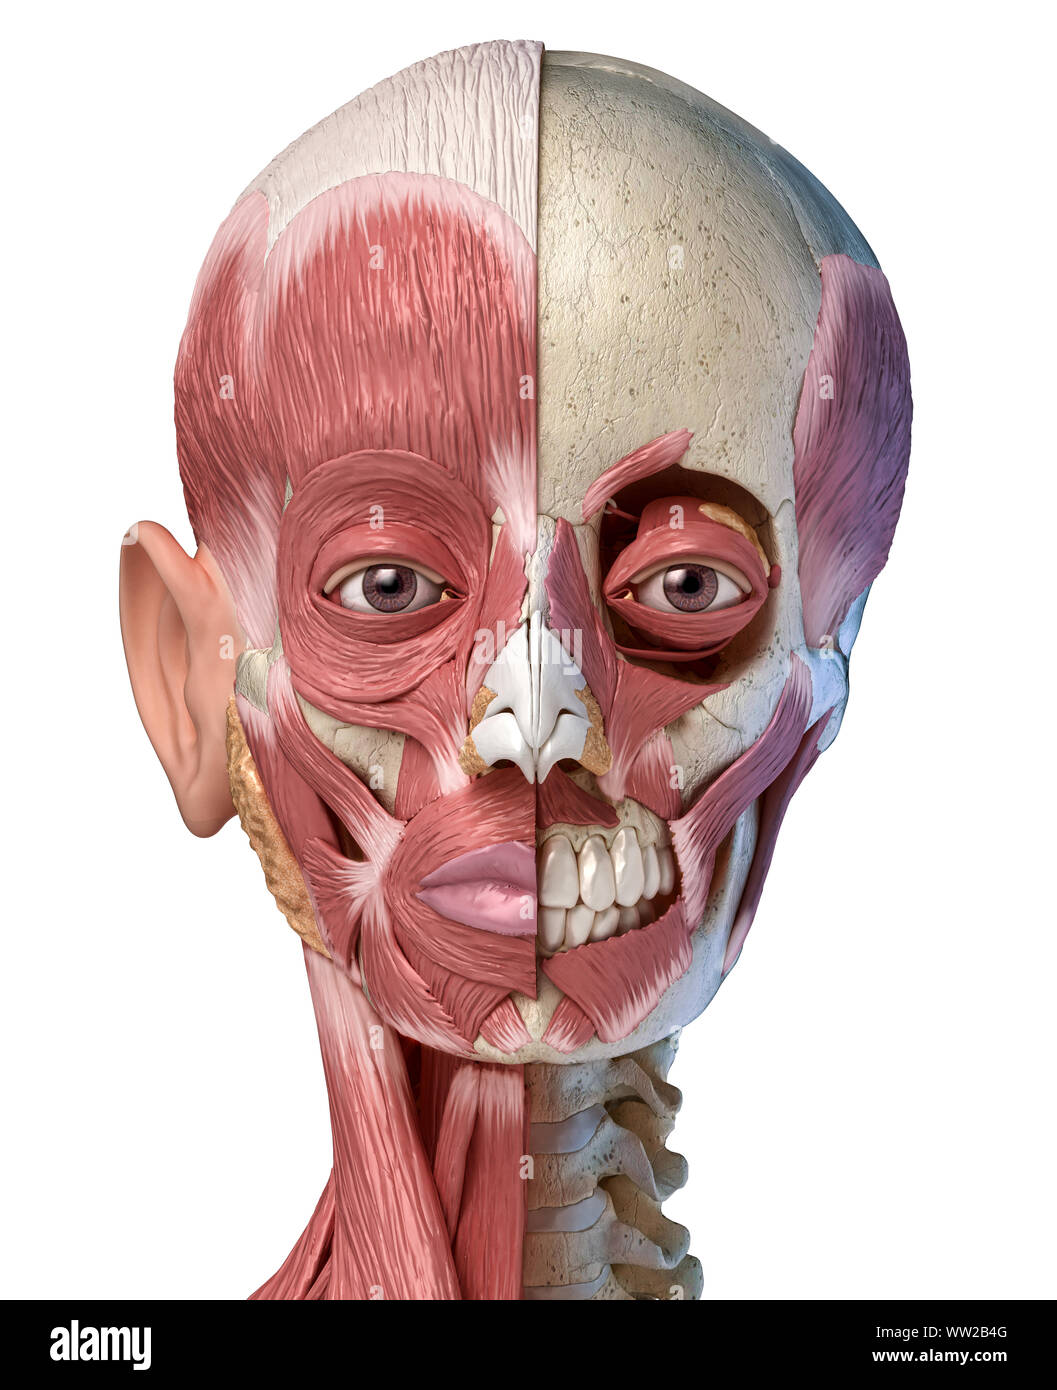 Die menschliche Anatomie 3d-Abbildung des Kopfes Muskeln voll auf der linken Seite und teilweise auf der rechten Seite. Anteriore Ansicht auf weißem Hintergrund. Stockfoto